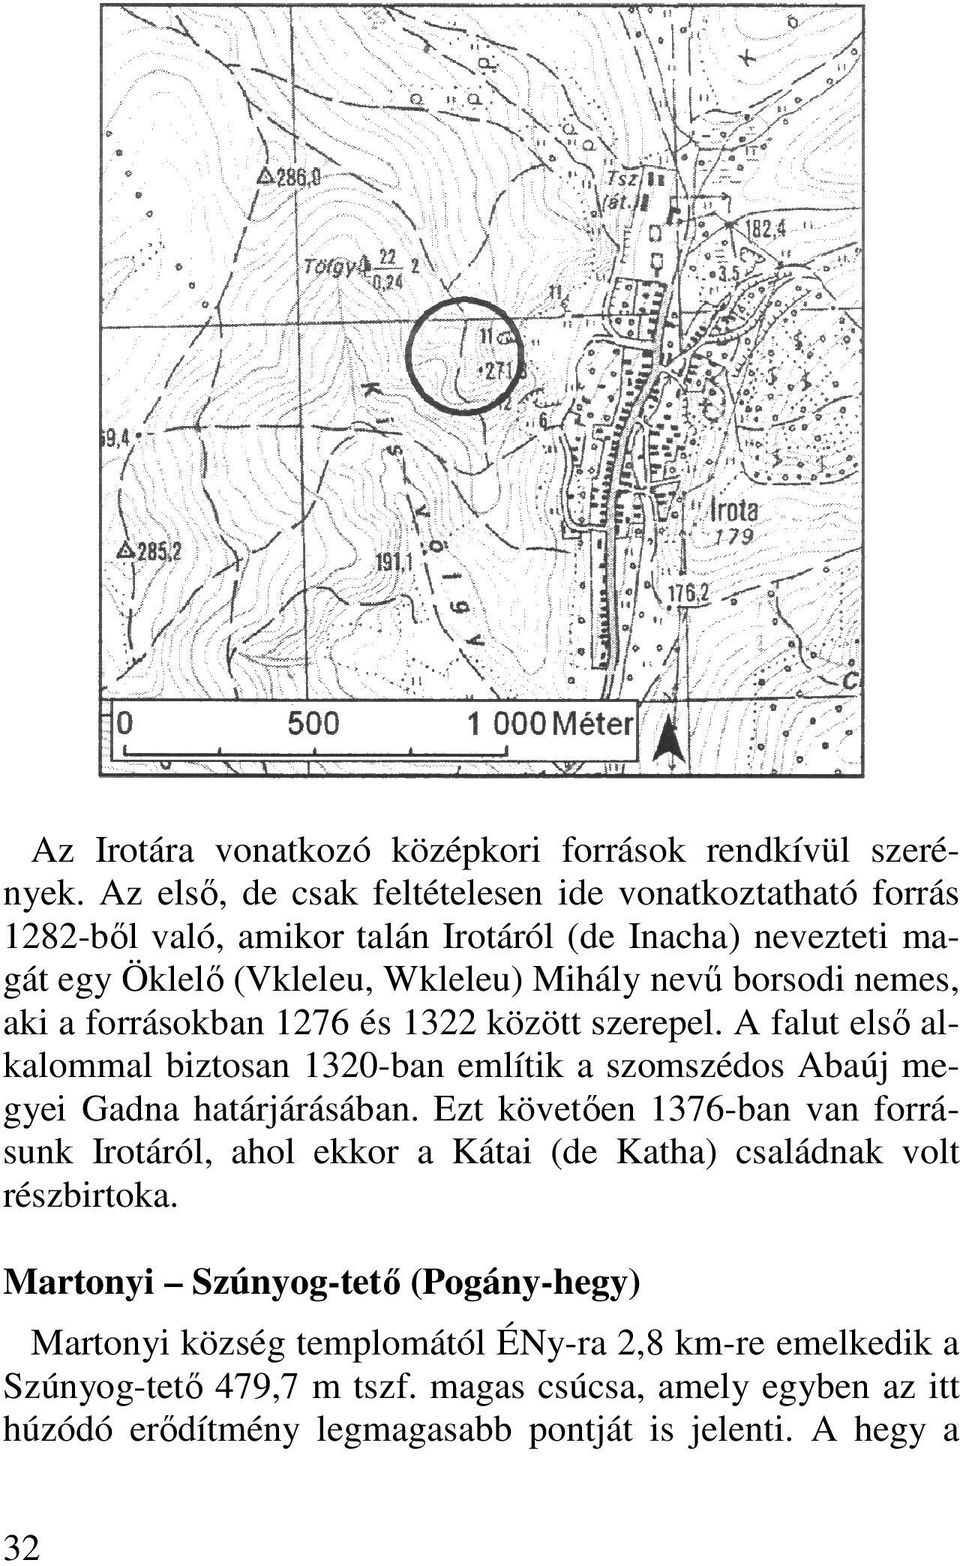 nemes, aki a forrásokban 1276 és 1322 között szerepel. A falut elsı alkalommal biztosan 1320-ban említik a szomszédos Abaúj megyei Gadna határjárásában.